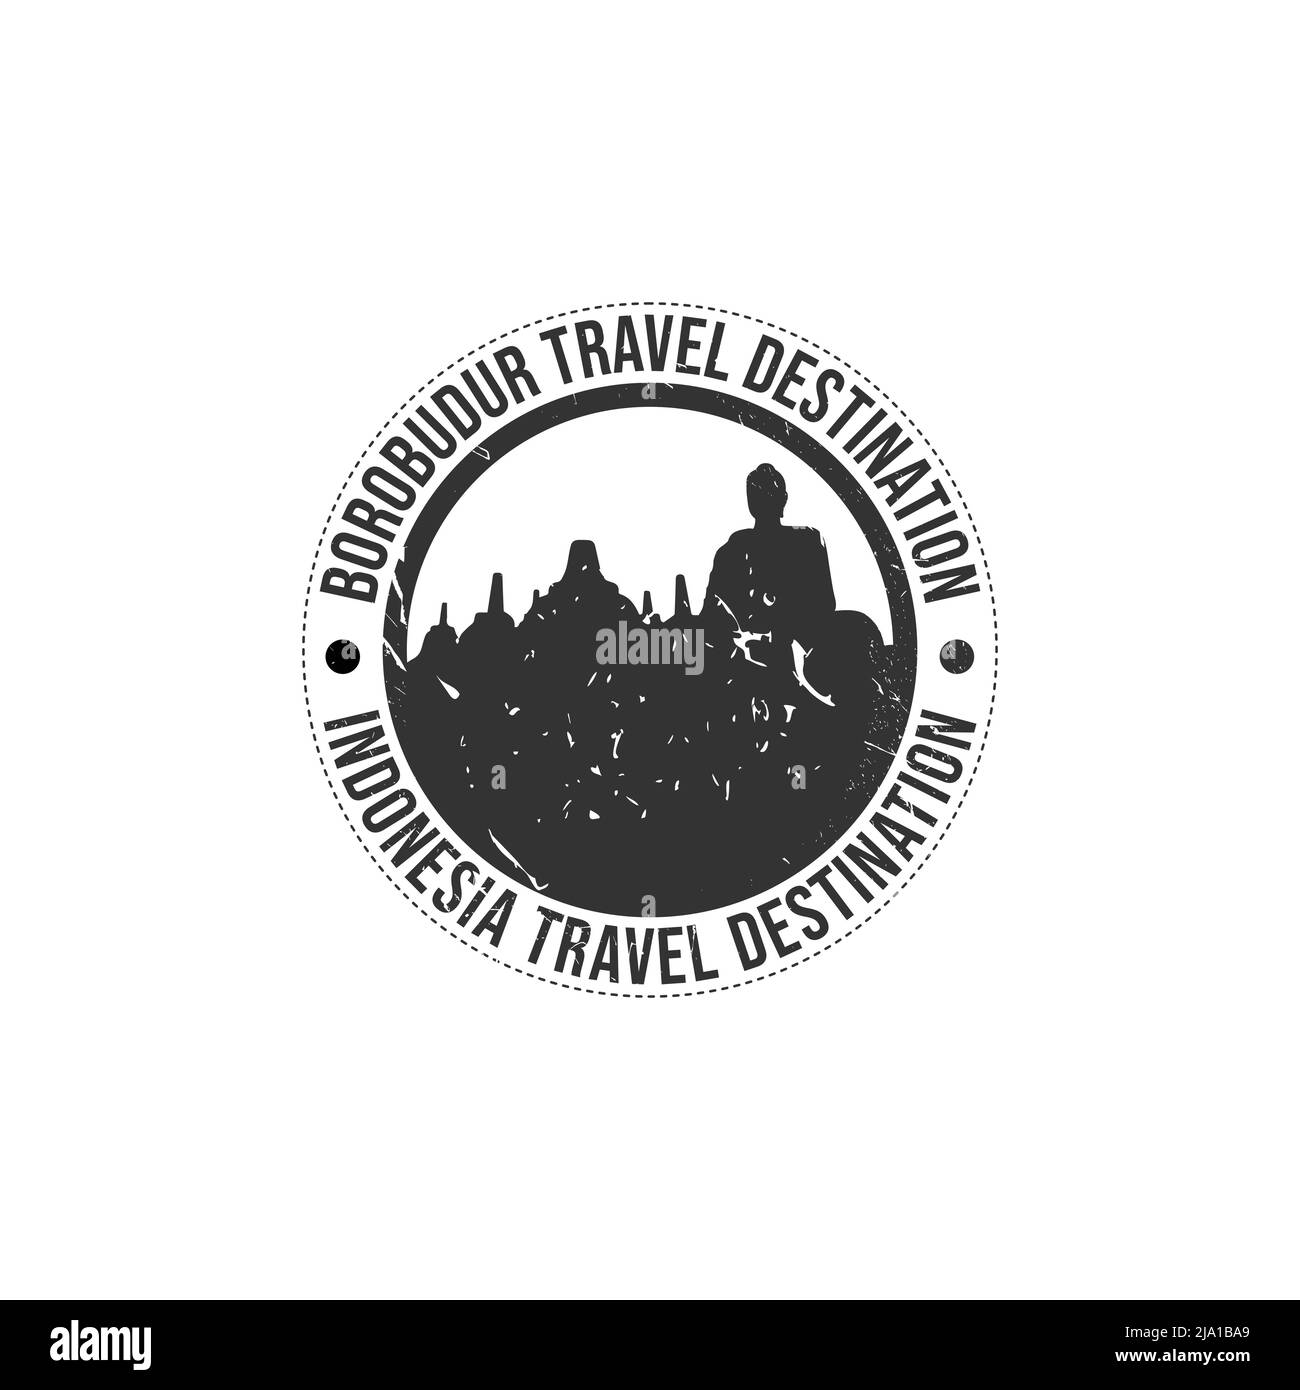 Grunge Gummistempel mit dem Text Borobudur travel Destination in der Marke geschrieben. Zeit zum Reisen. Silhouette borobudur Tempel indonesien histori Stock Vektor